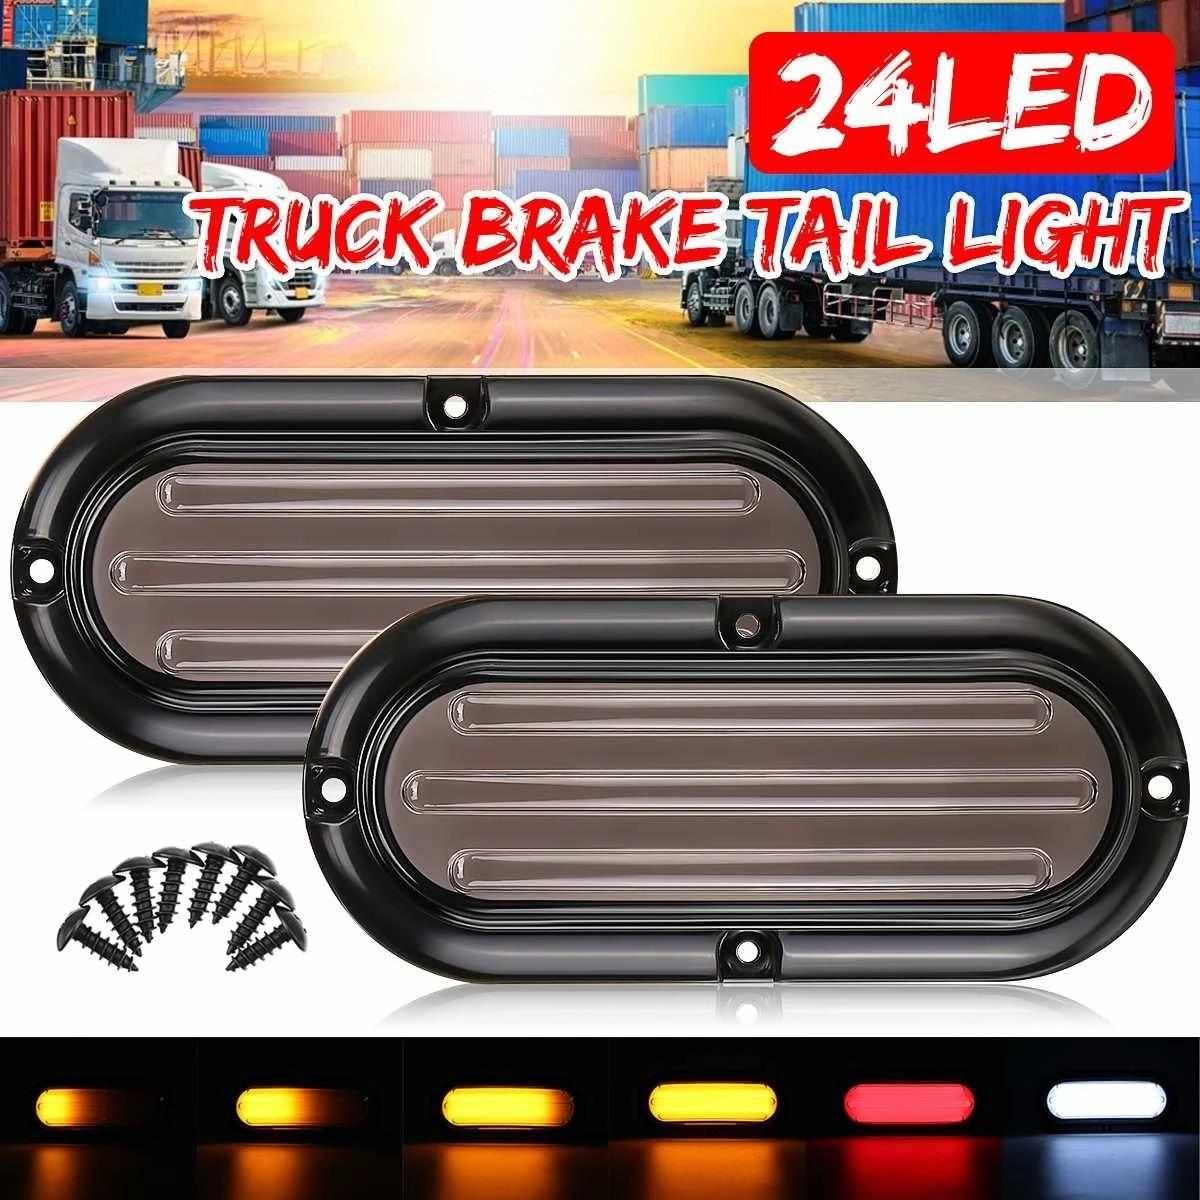 Heavy truck LED Brake Tail Light,led strobe warning lights